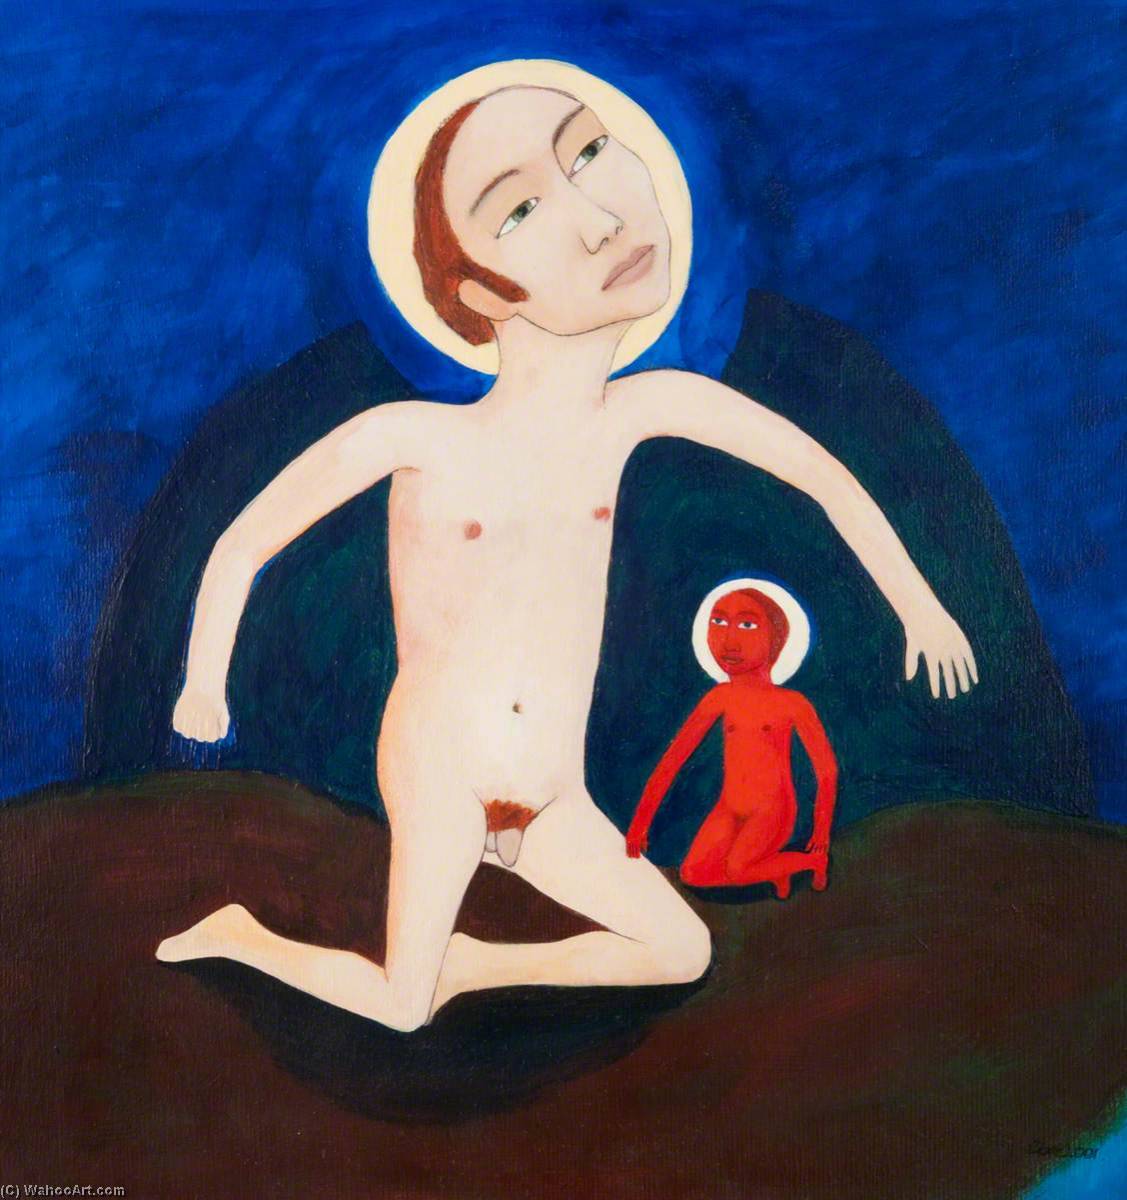 Wikioo.org - Bách khoa toàn thư về mỹ thuật - Vẽ tranh, Tác phẩm nghệ thuật Clare Galloway - Boy with a Small Red Boy